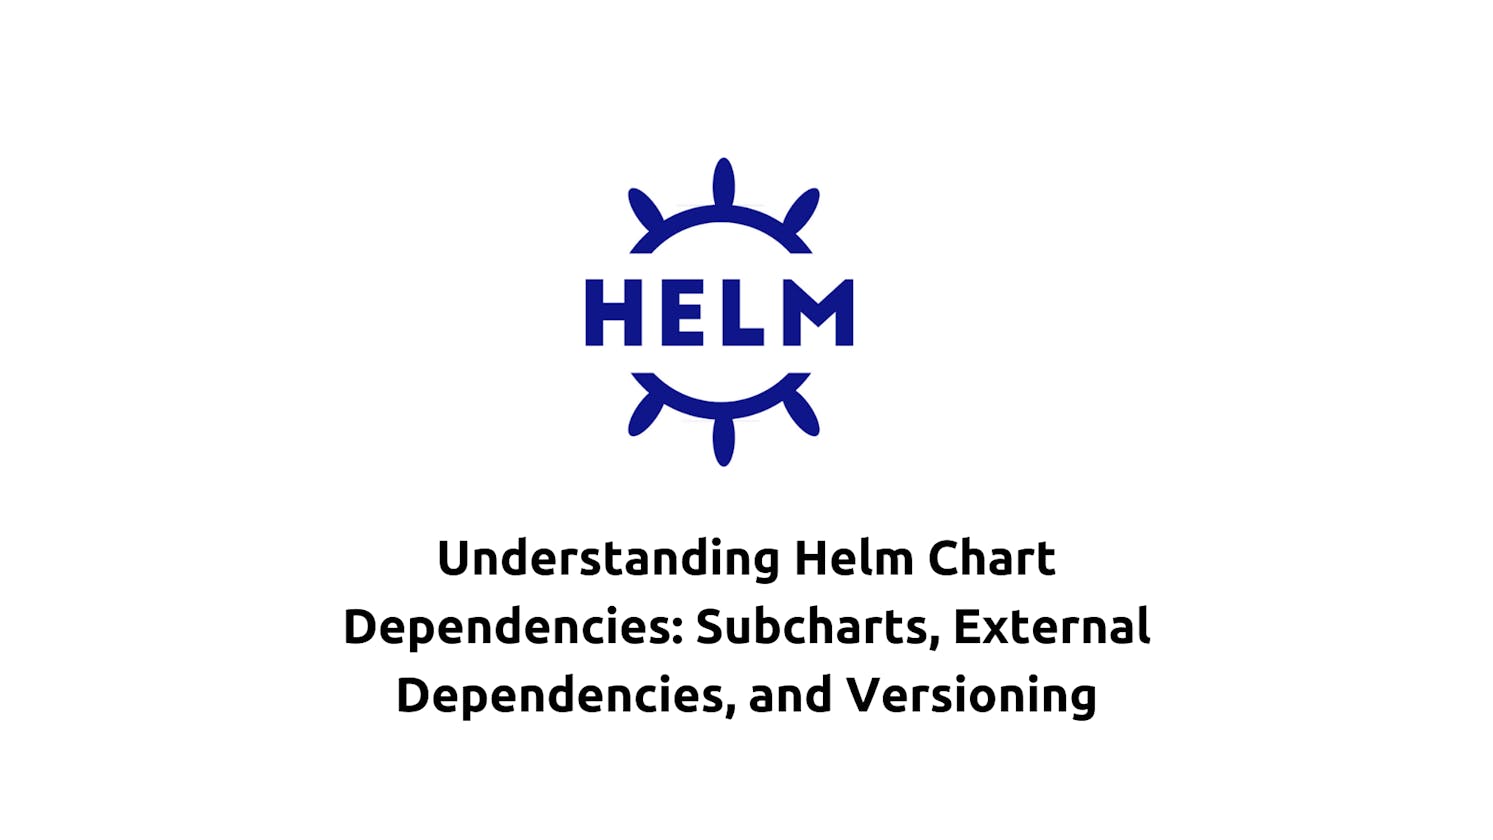 Understanding Helm Chart Dependencies: Subcharts, External Dependencies, and Versioning